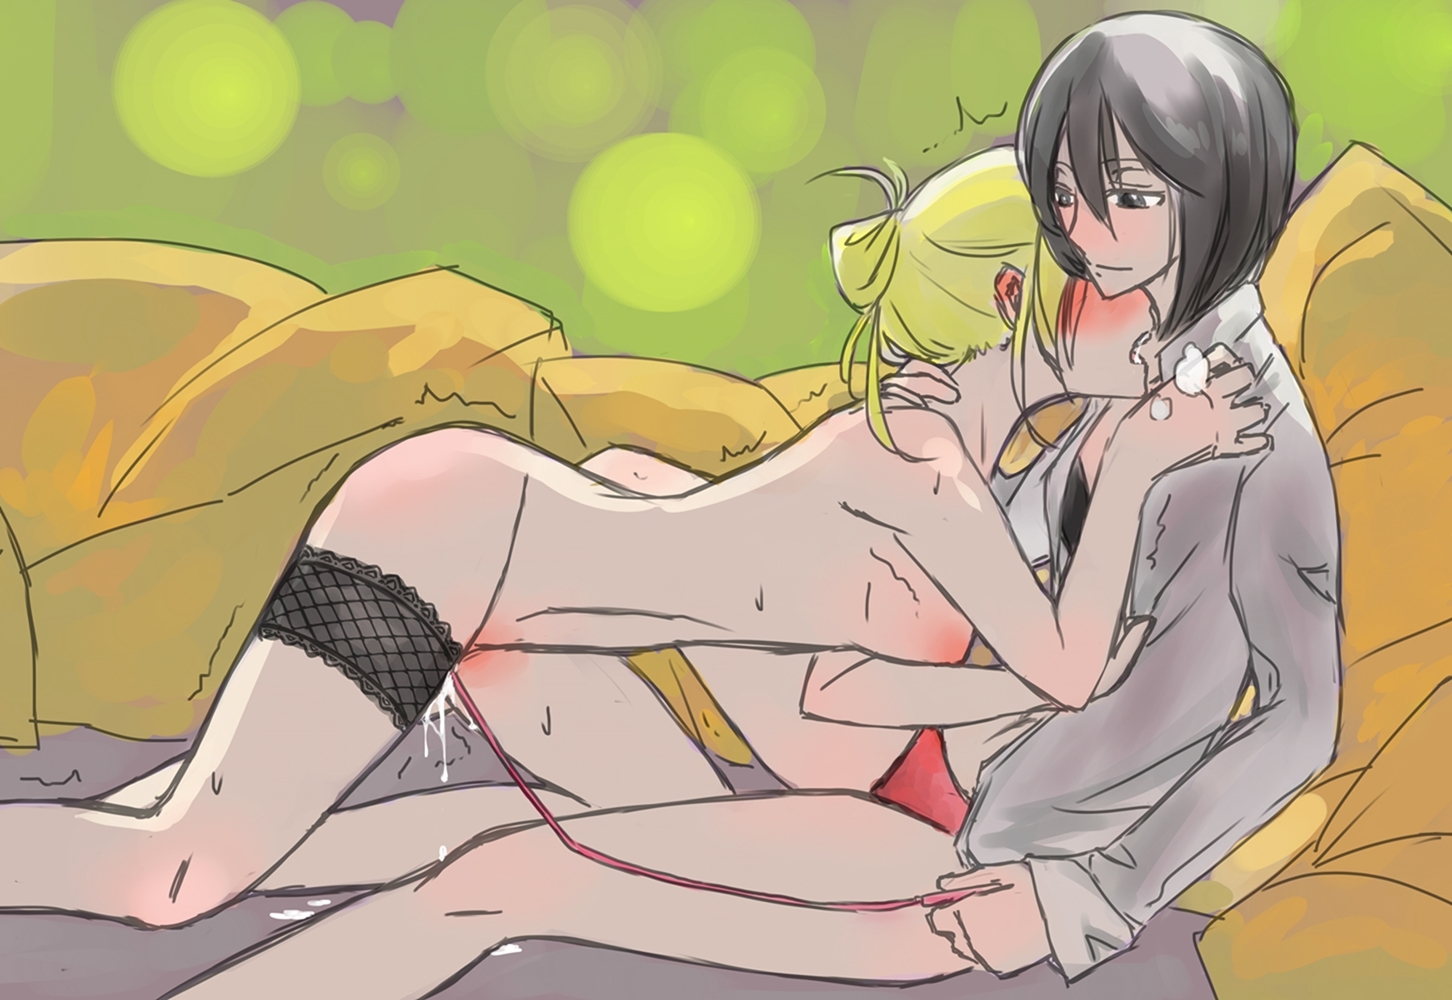 Pairing: Annie x Mikasa. 